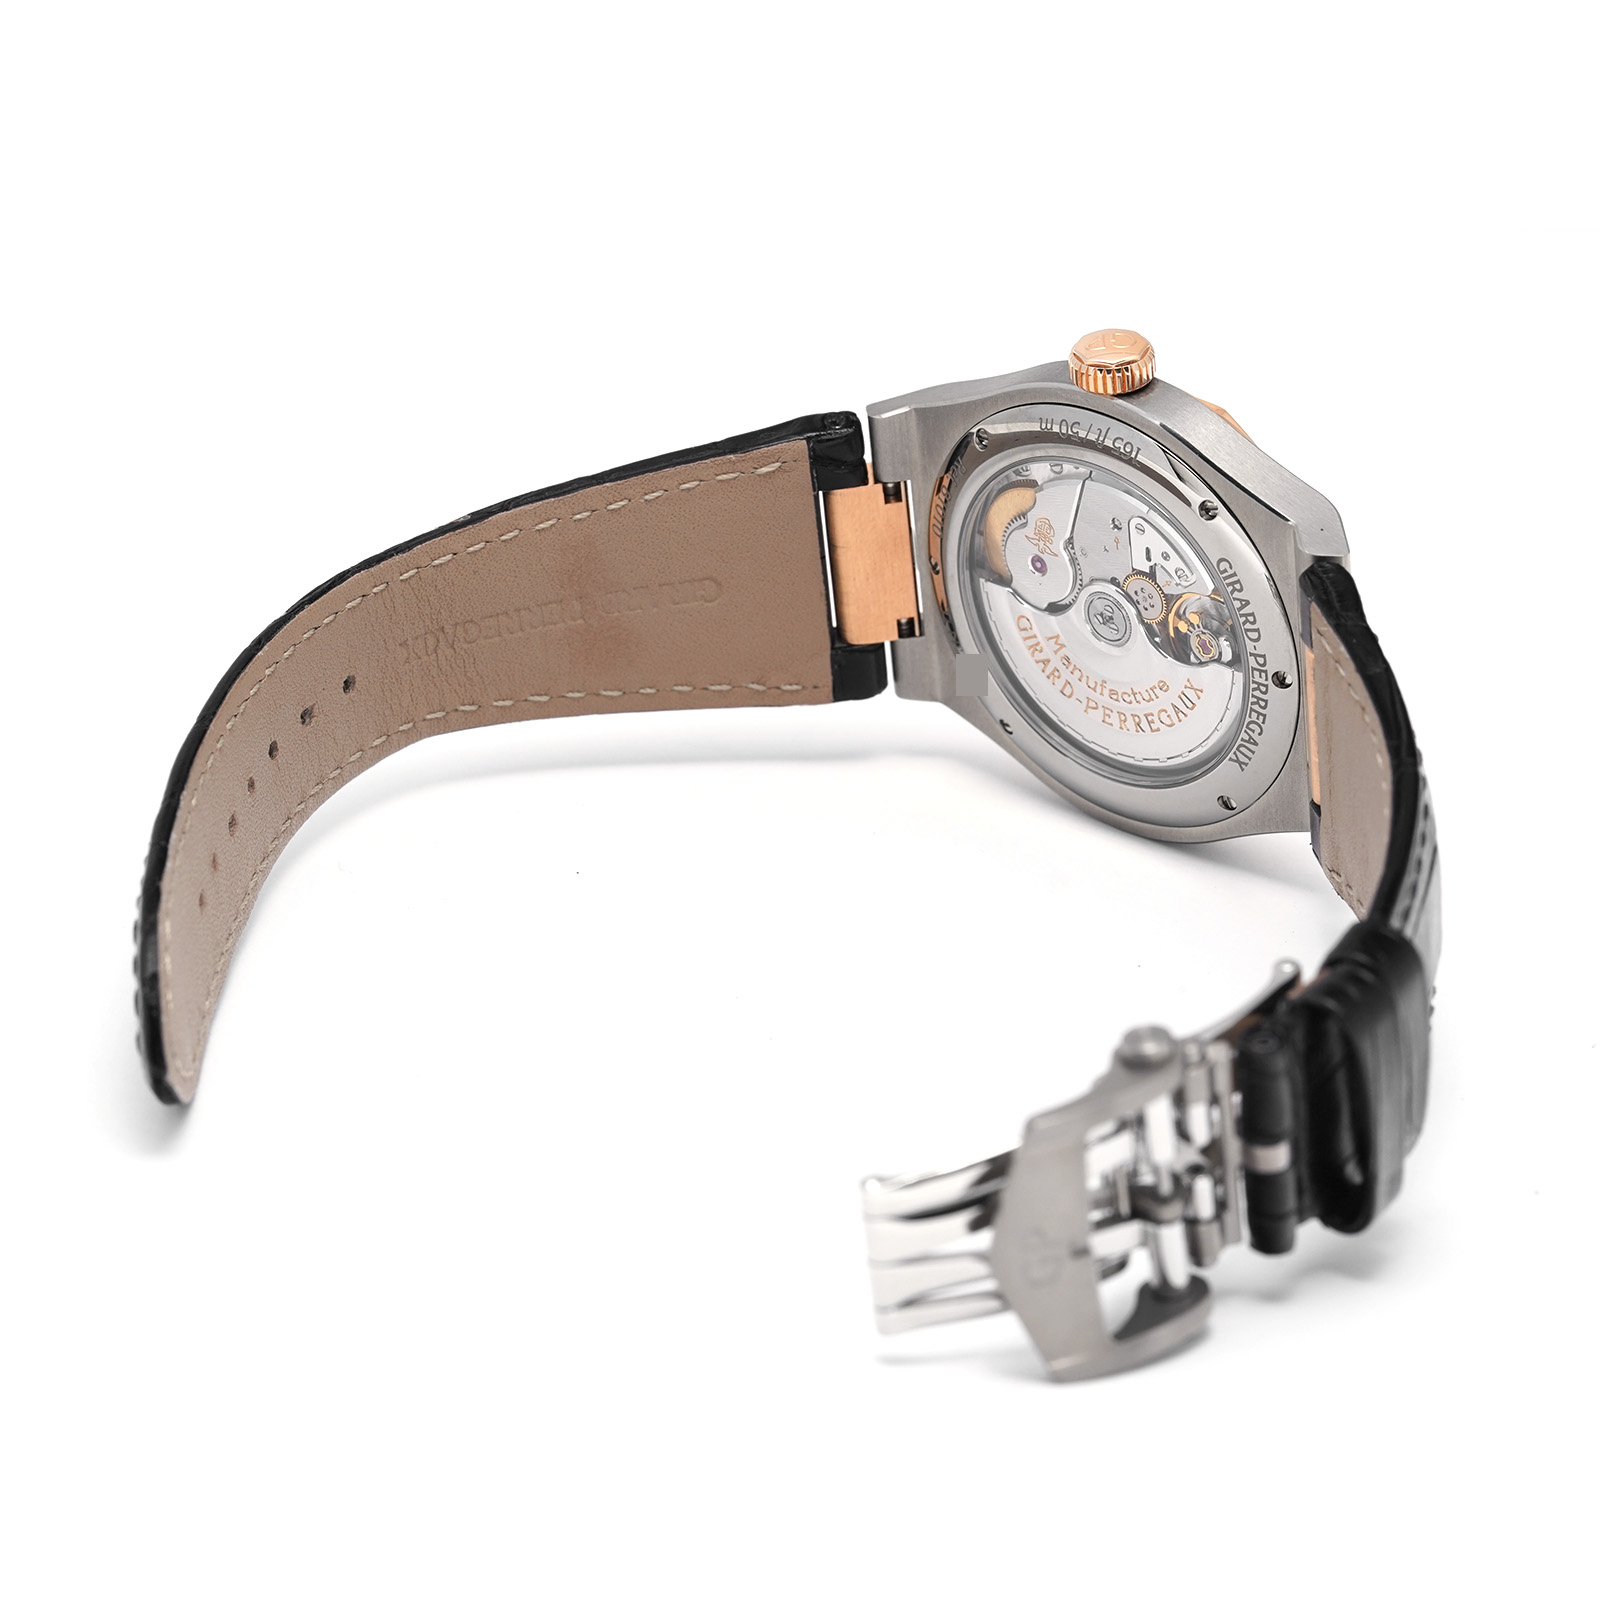 ジラール ペルゴ / GIRARD-PERREGAUX ロレアート 42mm 81010-26-232-BB6A グレー メンズ 時計  【中古】【wristwatch】